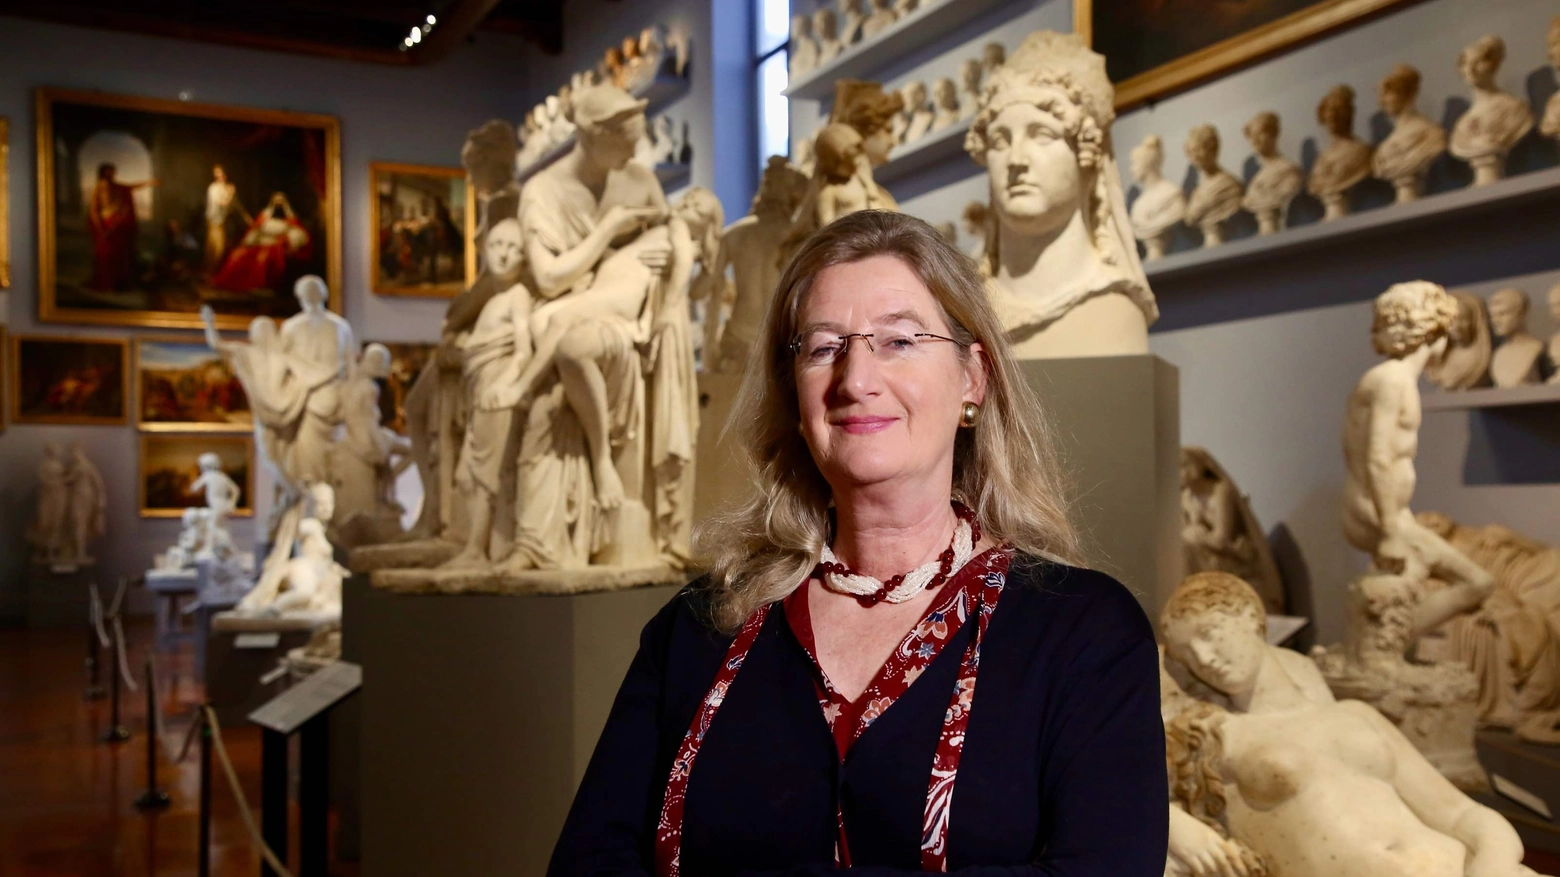 La direttrice della Galleria dell’Accademia interviene sul Guardian raccontando come ha riorganizzato il museo. “Undici milioni di persone che ogni anno vogliono visitare Firenze non possono essere respinti, ma vanno gestiti proteggendo il patrimonio della città”